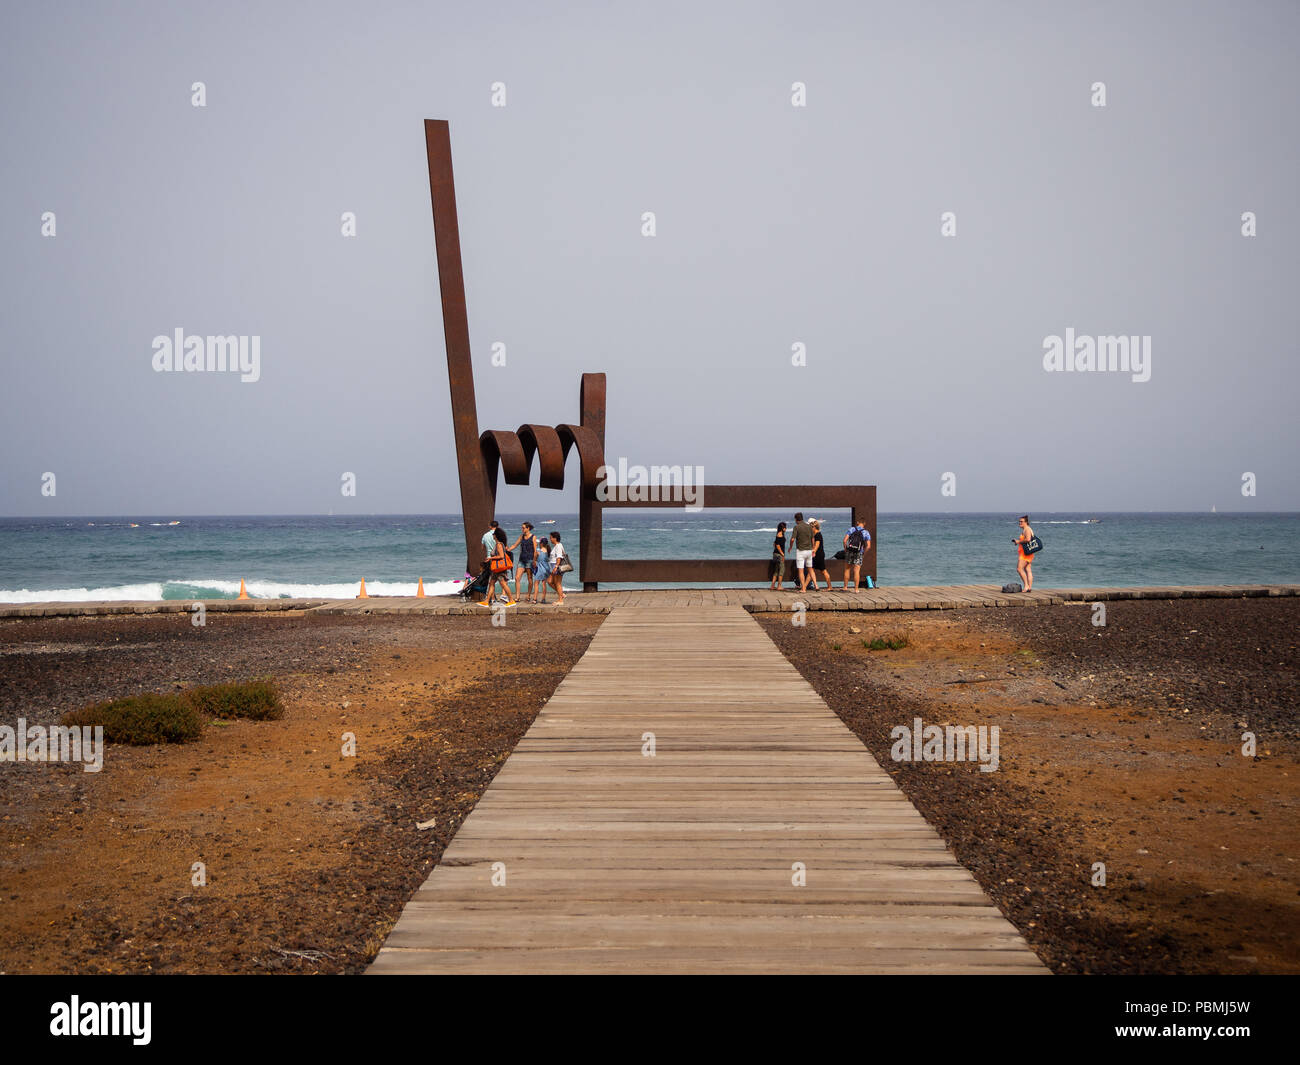 Playa de Las Americas, Tenerife, Spagna - 11 Luglio 2018: Persone in appoggio o passando per il modernista scultura di ferro, di oggetti artistici in metallo per artista J.L. Salvad Foto Stock